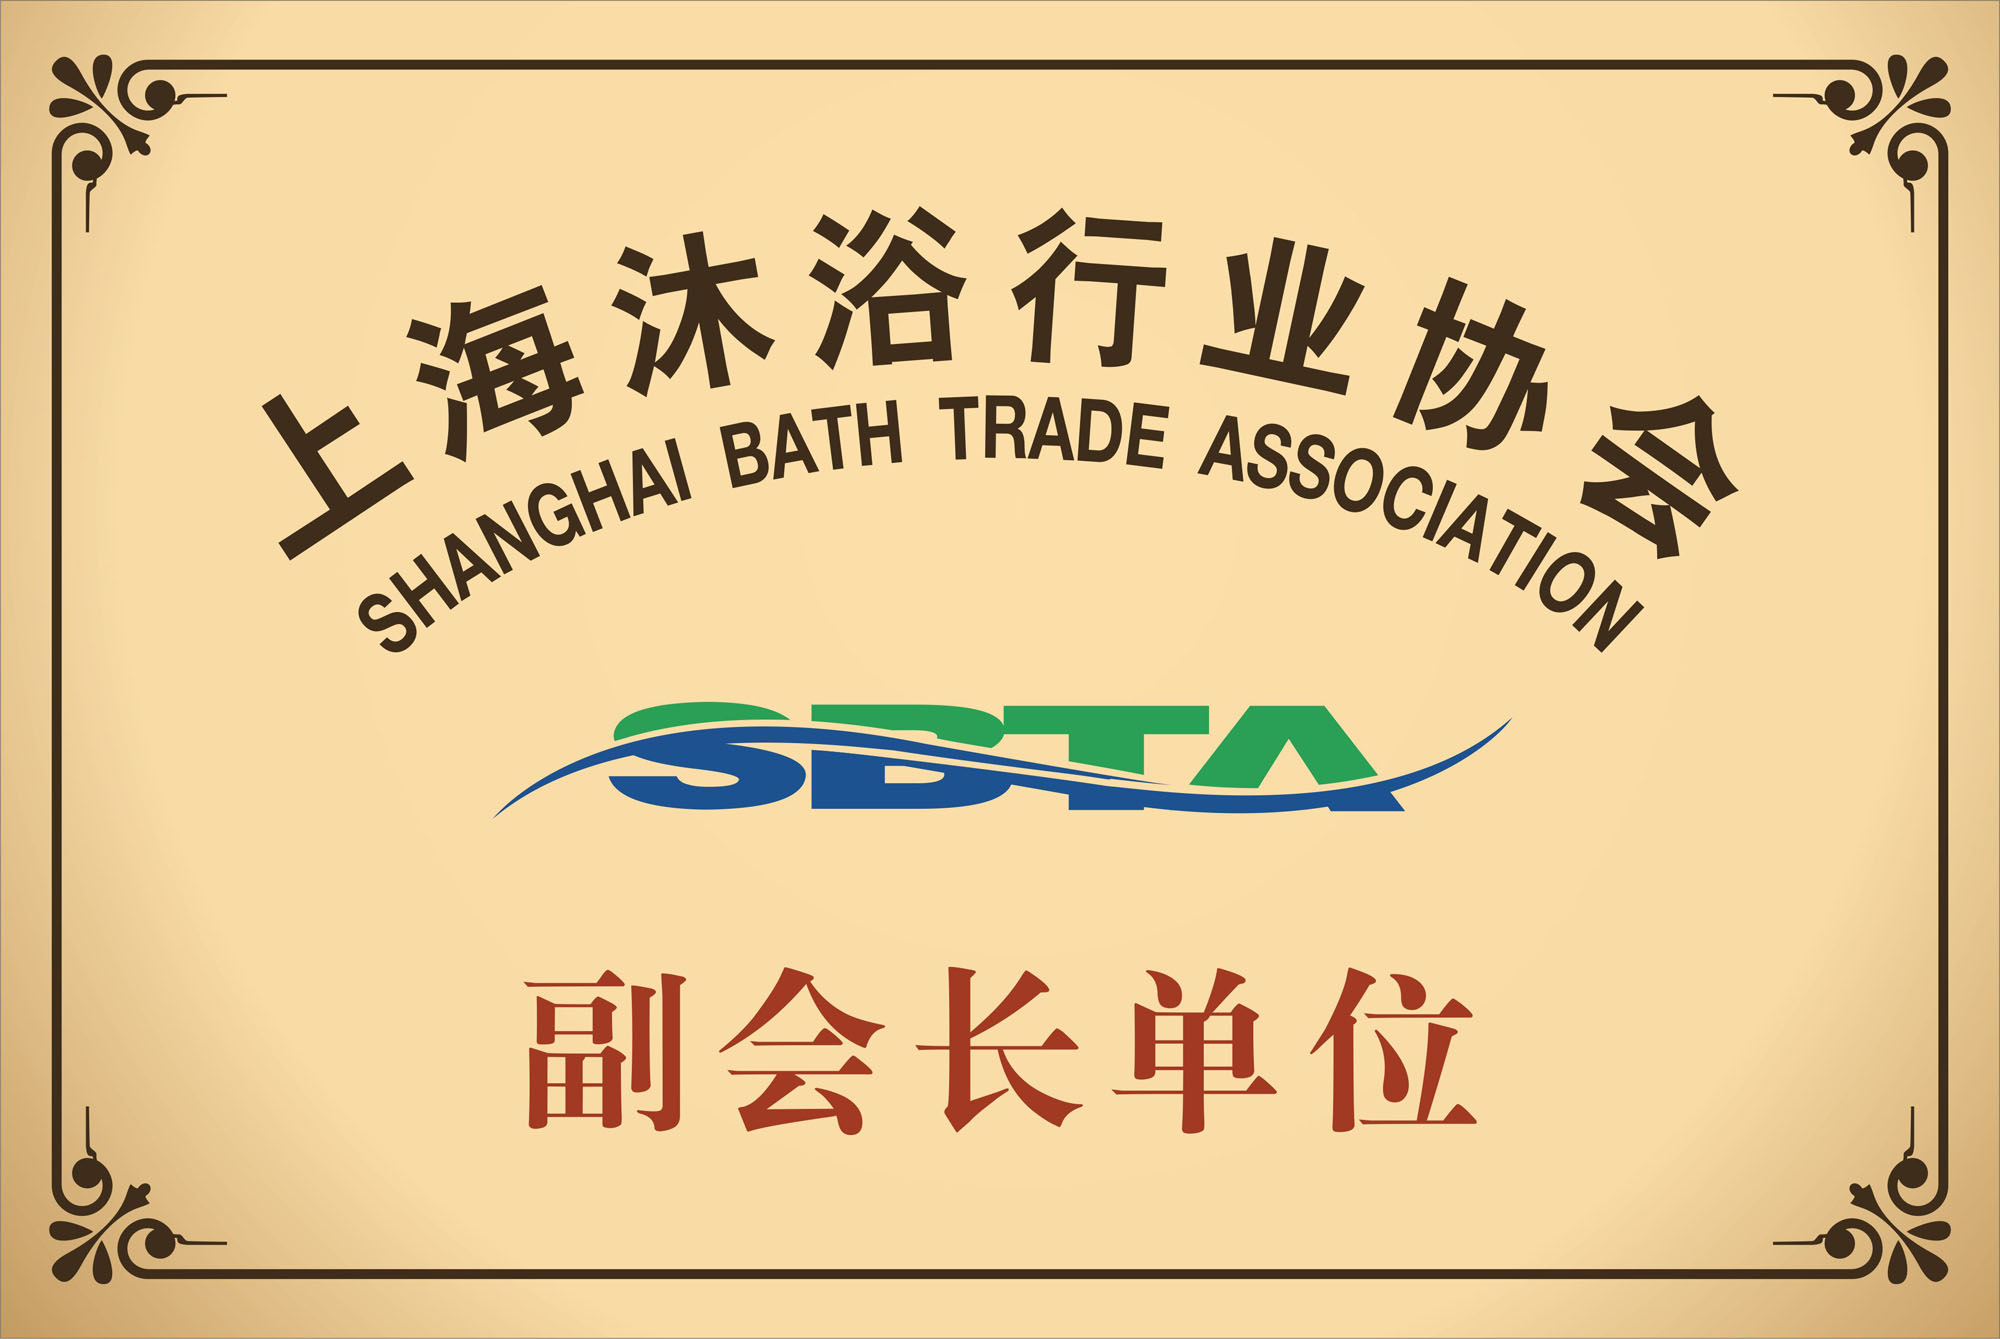 上海沐浴行业协会副会长单位